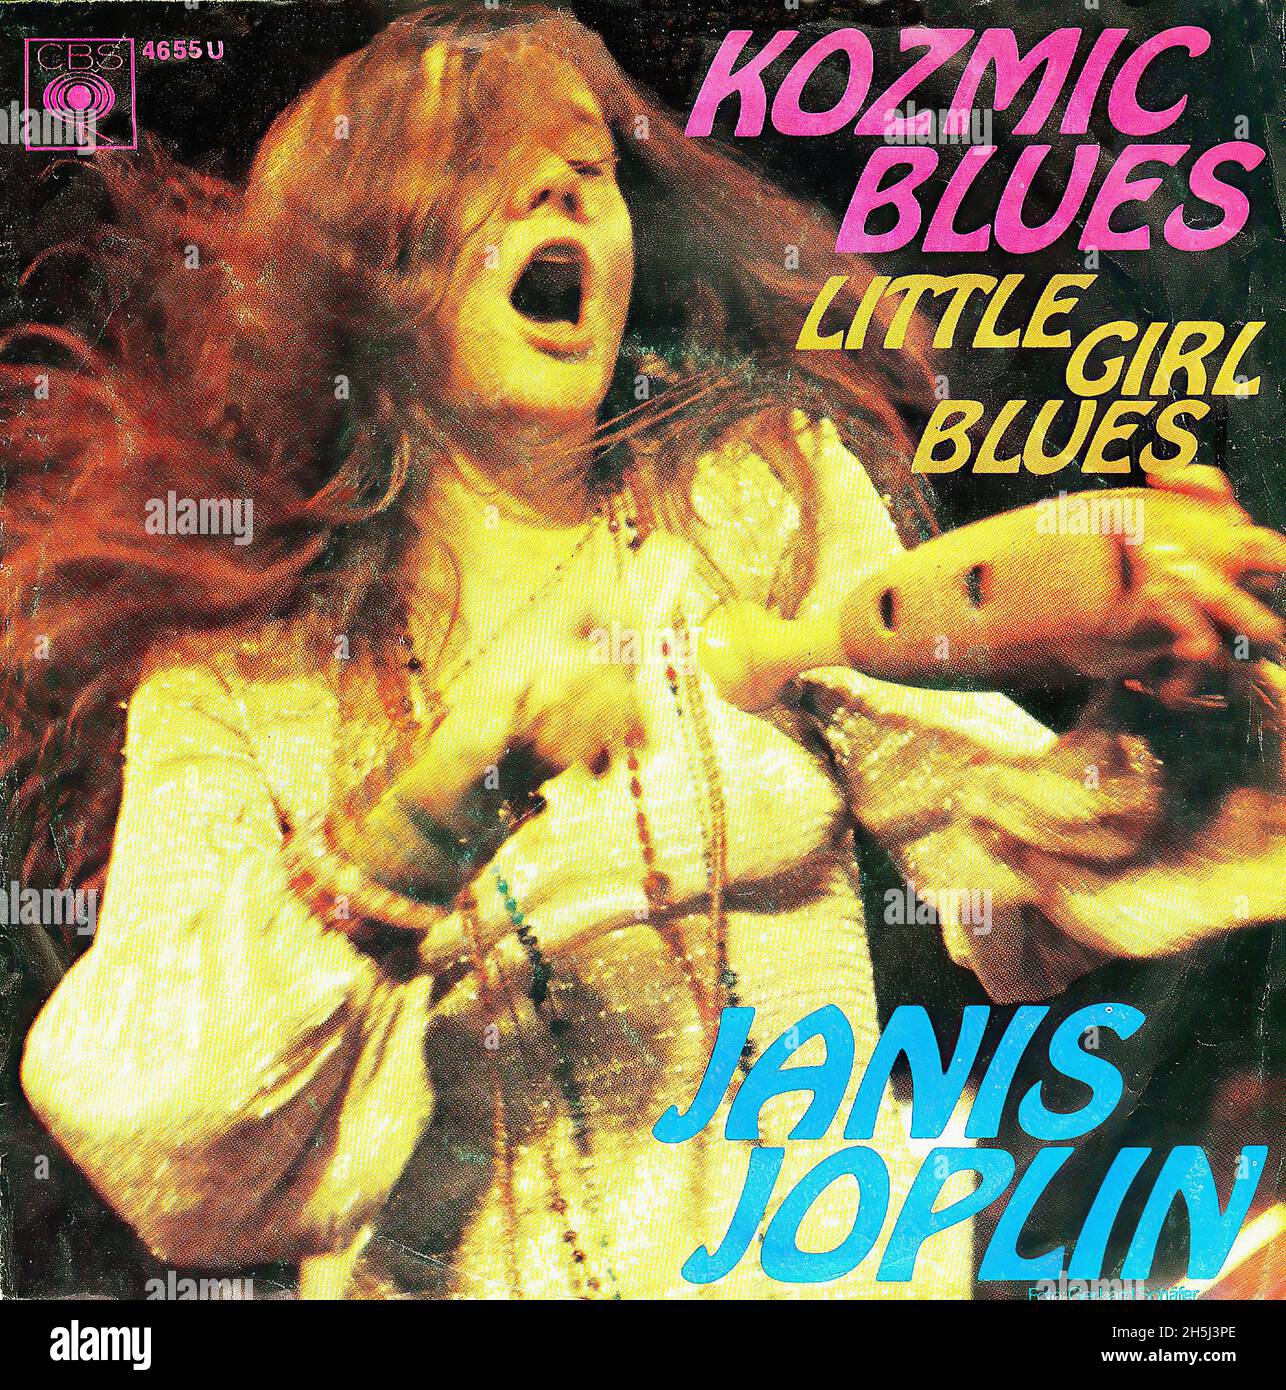 Vintage single record cover - Joplin, Janis - Kozmic Blues - D -1969 Stock Photo